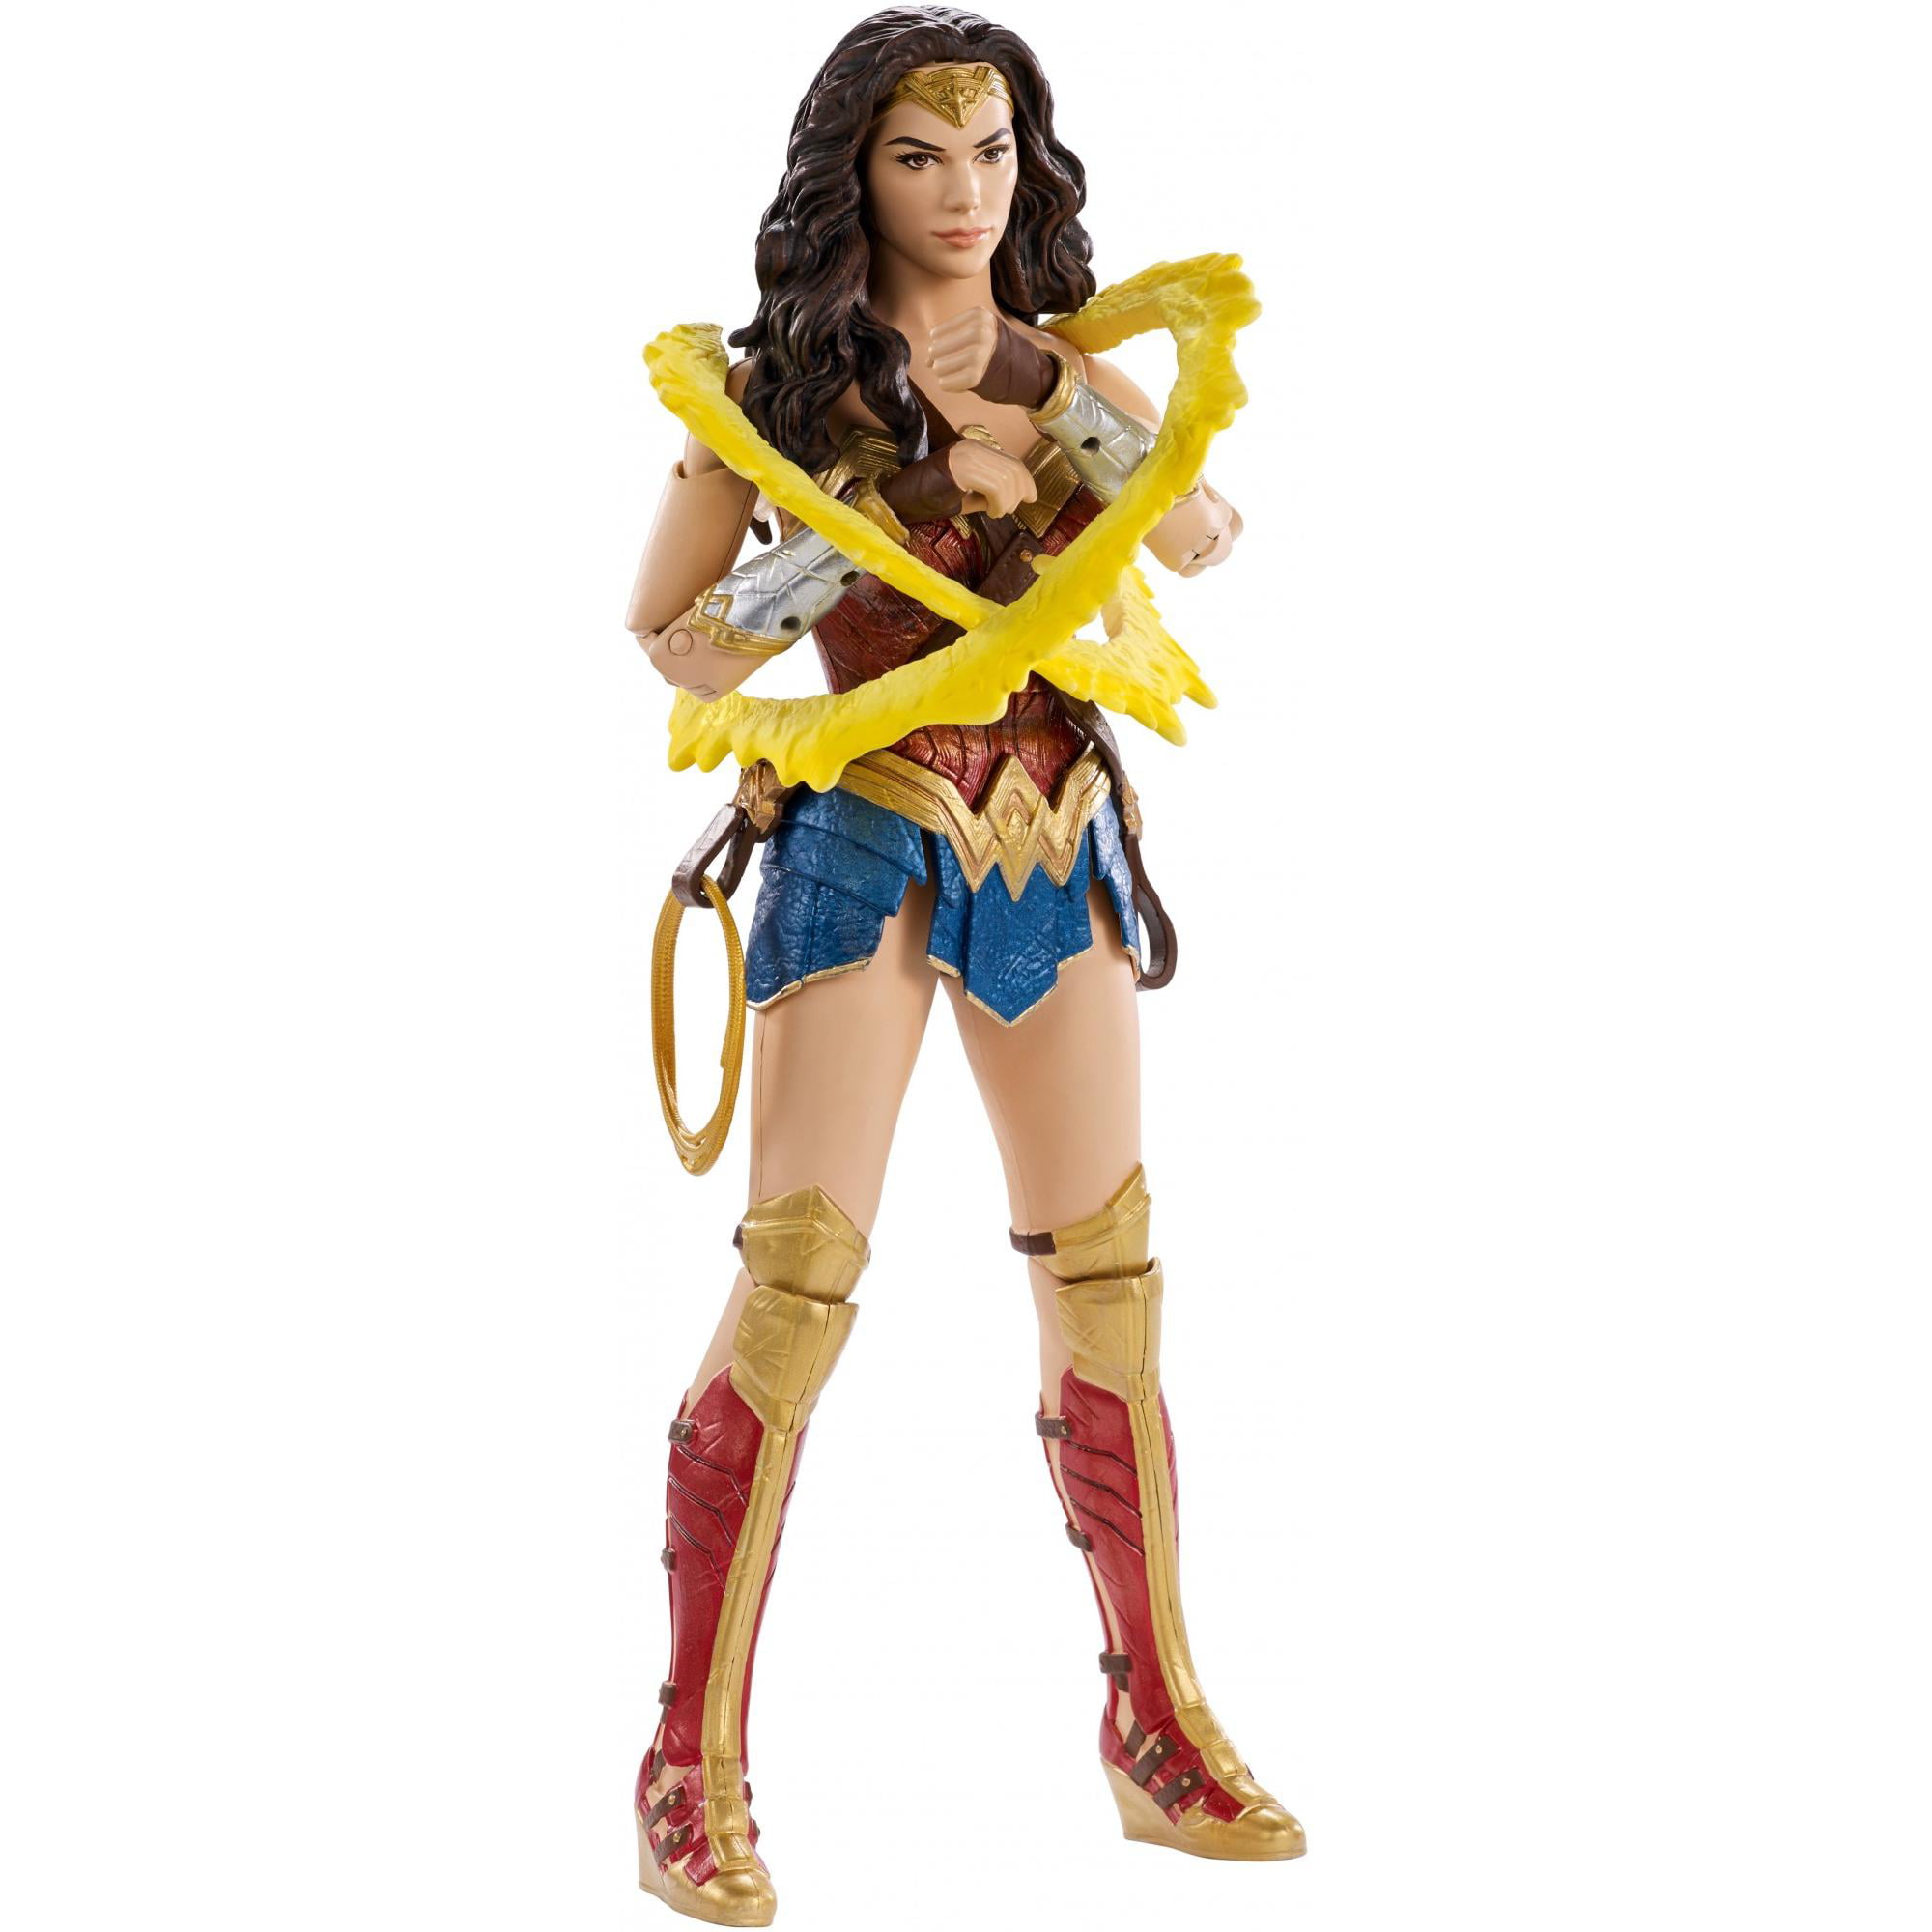 Details about   DC Comics Mattel Wonder Woman Multiverse 12 inch Action Figure Battle Ready Doll 